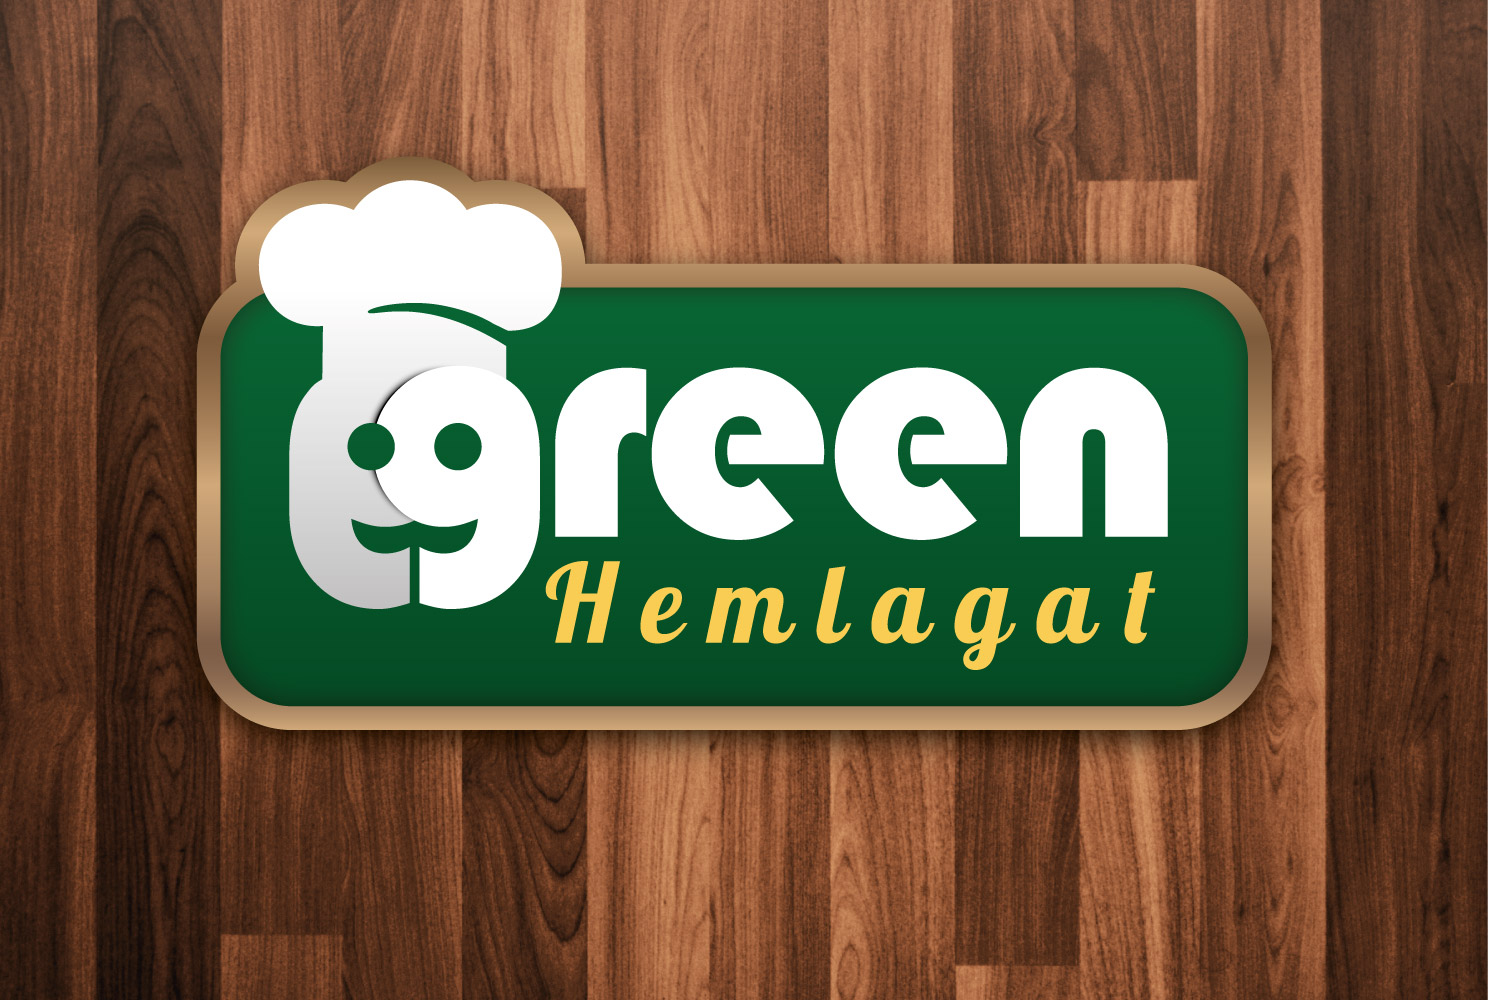 Logo för Green matmarknads koncept "Hemlagat", designad av Peter Berglund, Bullit Reklambyrå